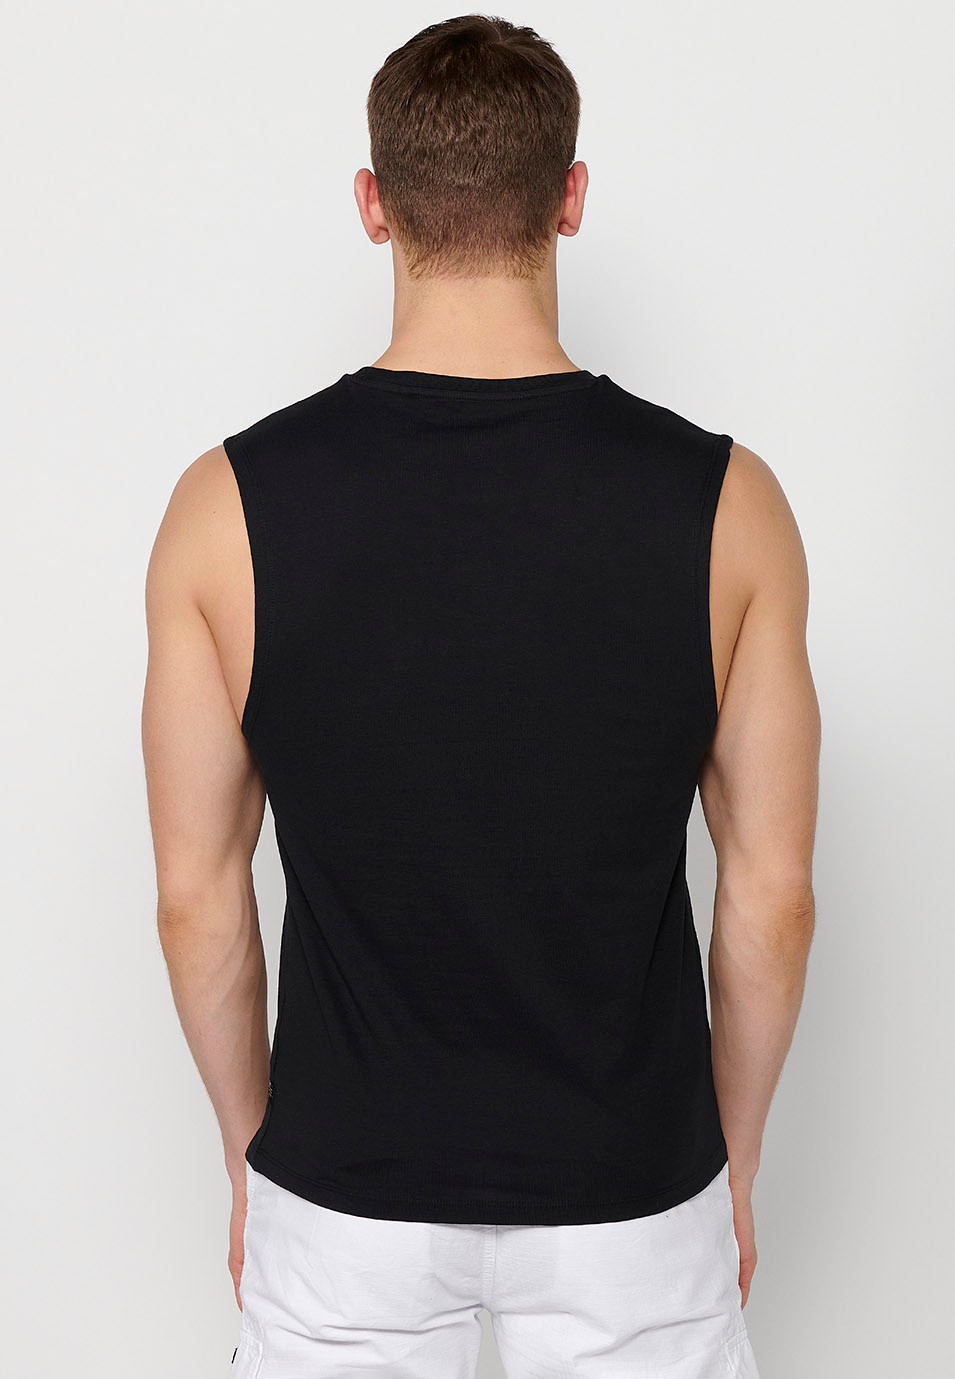 Ärmelloses T-Shirt, Frontdruck „Tokyo“, schwarze Farbe für Herren 4